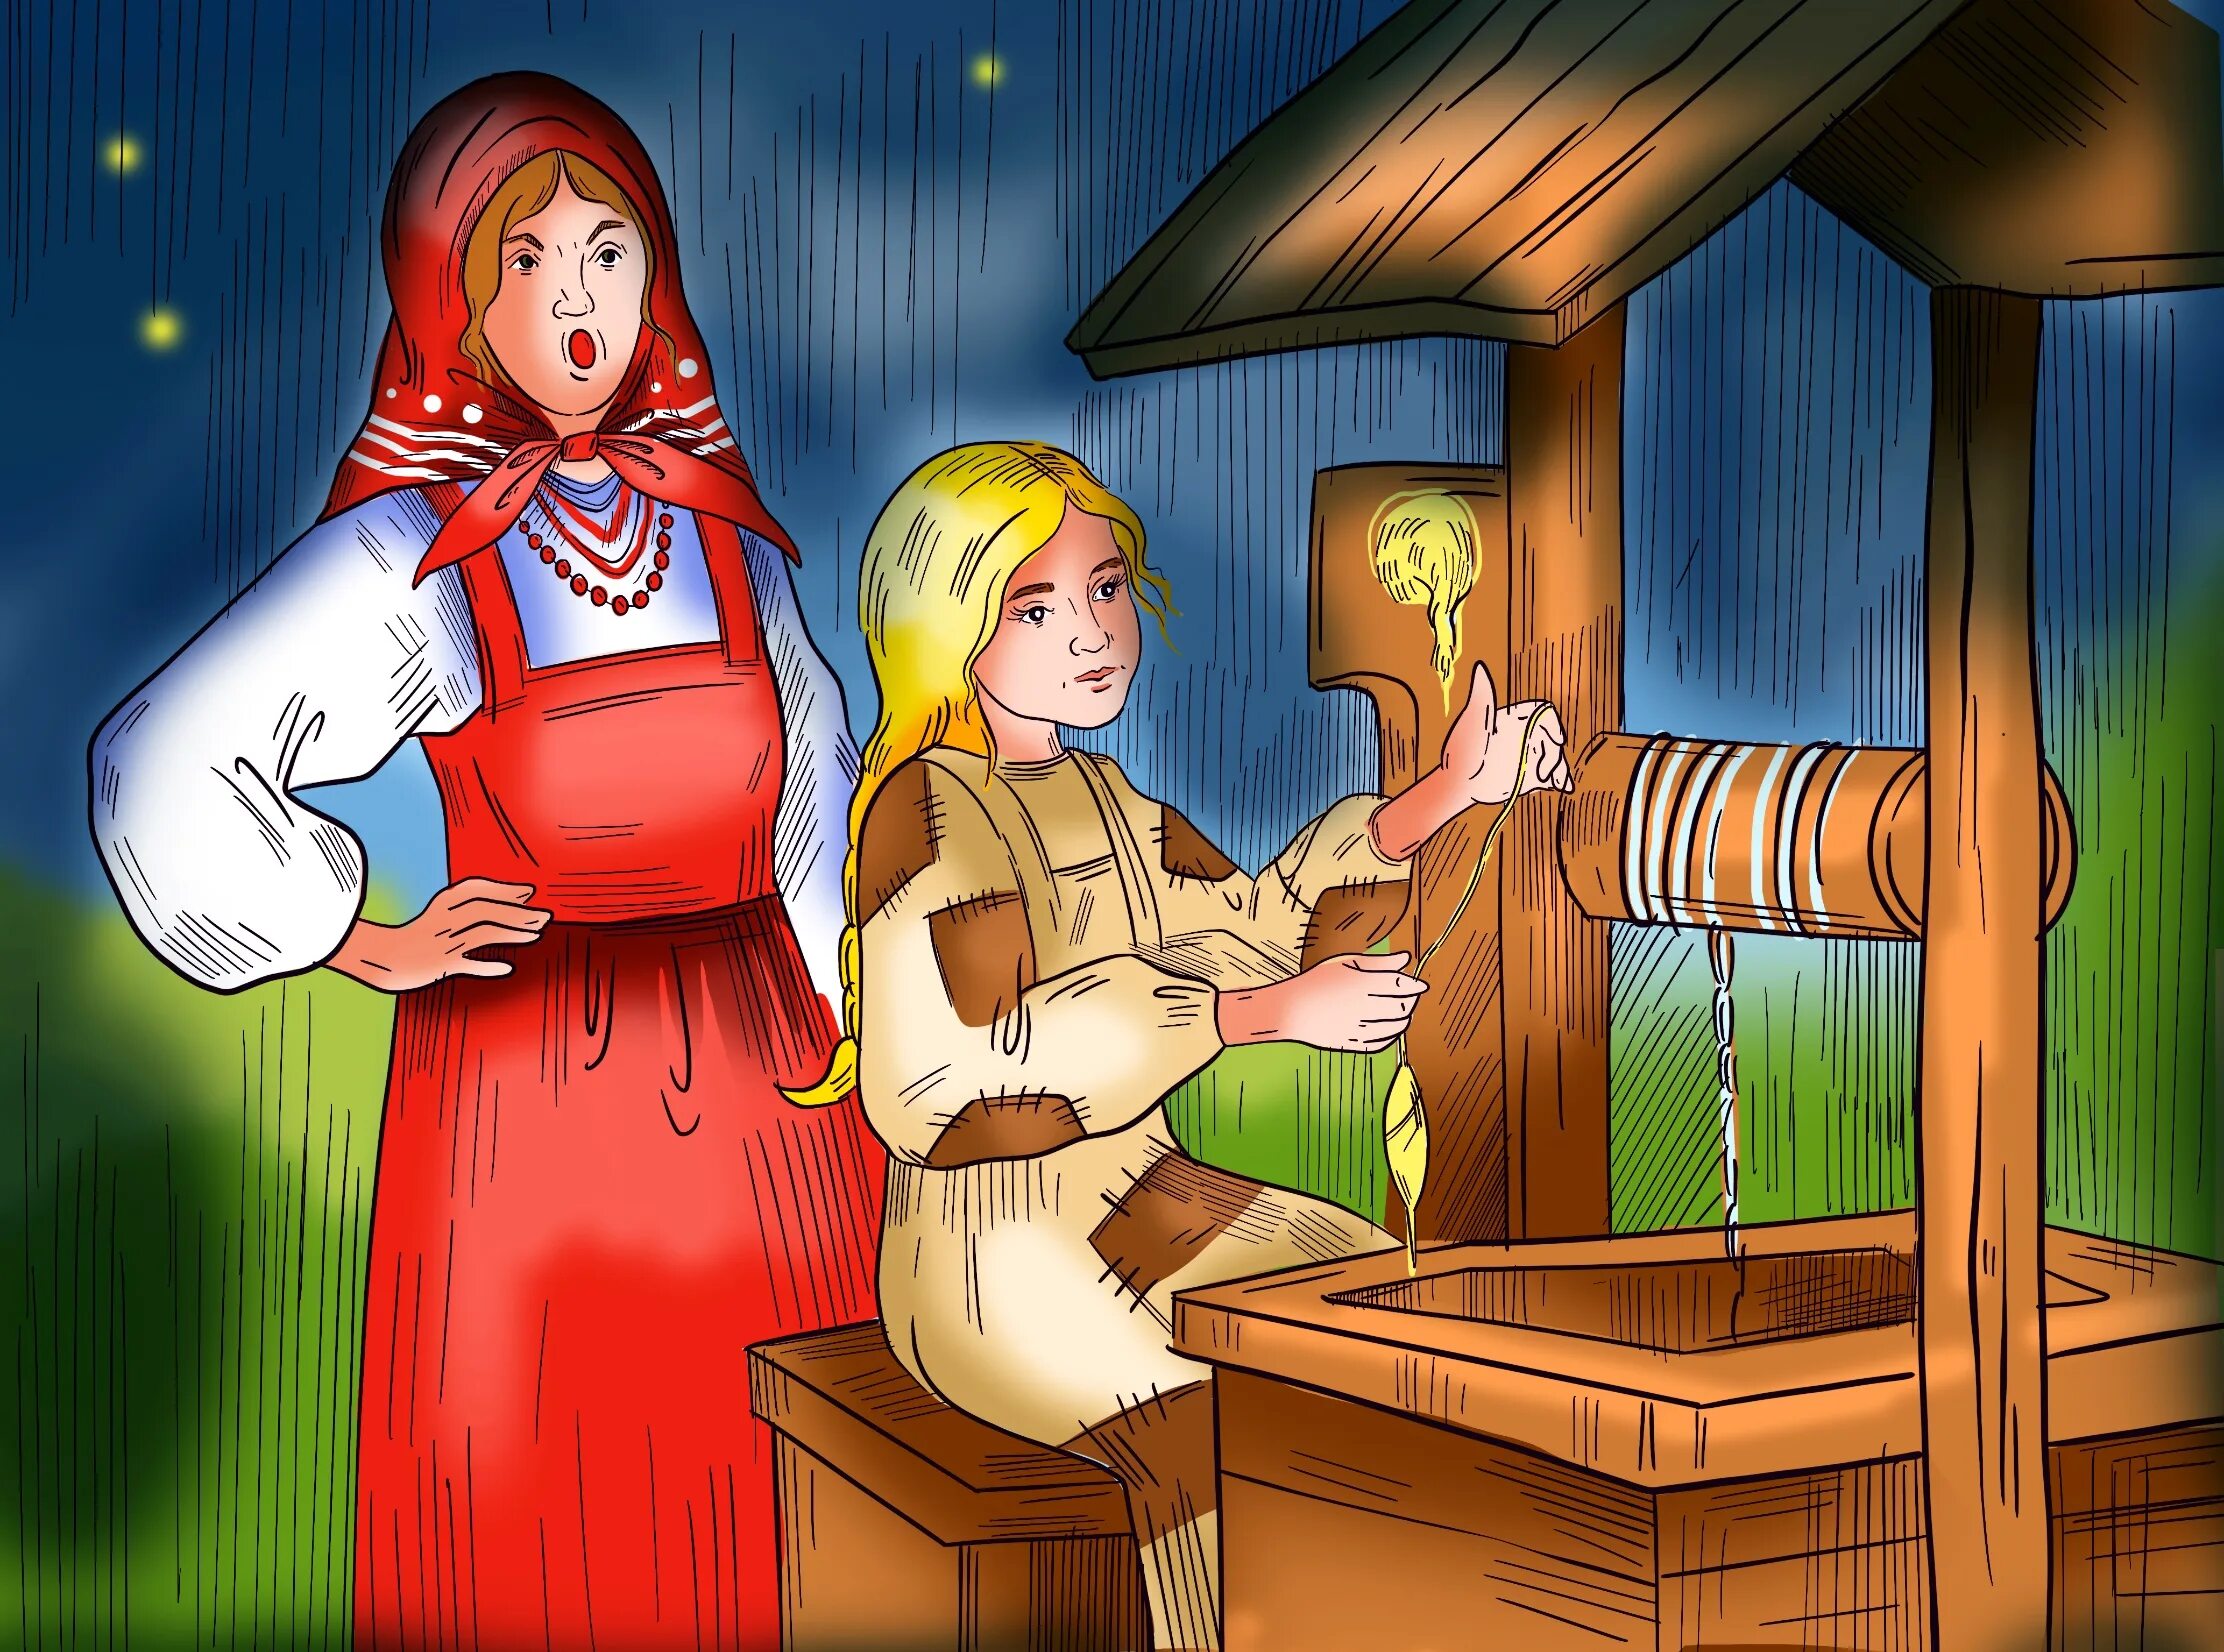 Морозко мачеха. "Падчерица и Мачехина дочка" иллюстрации к сказке. Мачеха и падчерица из Морозко. Морозко Мачехина дочка.